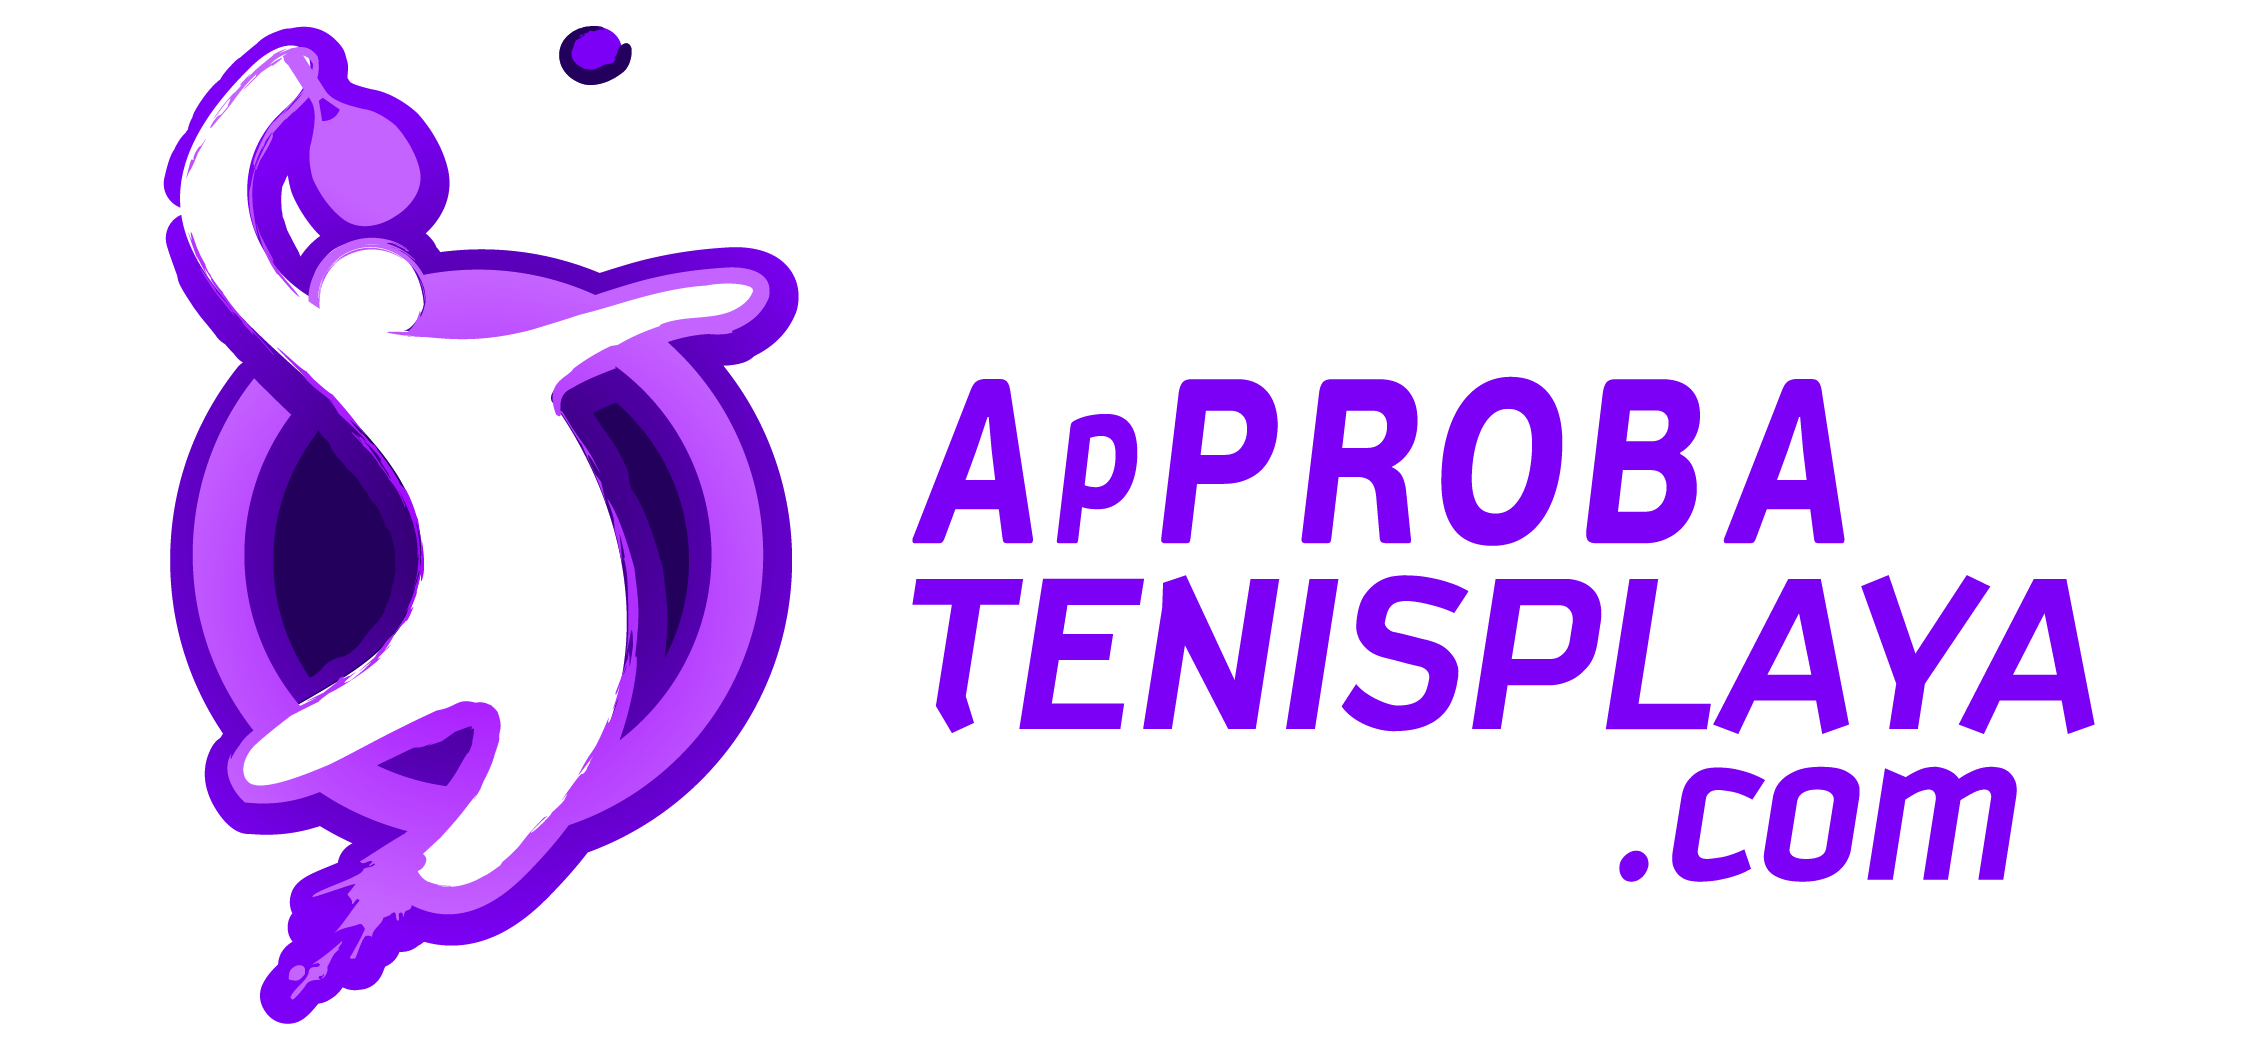 logo_approbatenisplaya_2014-02